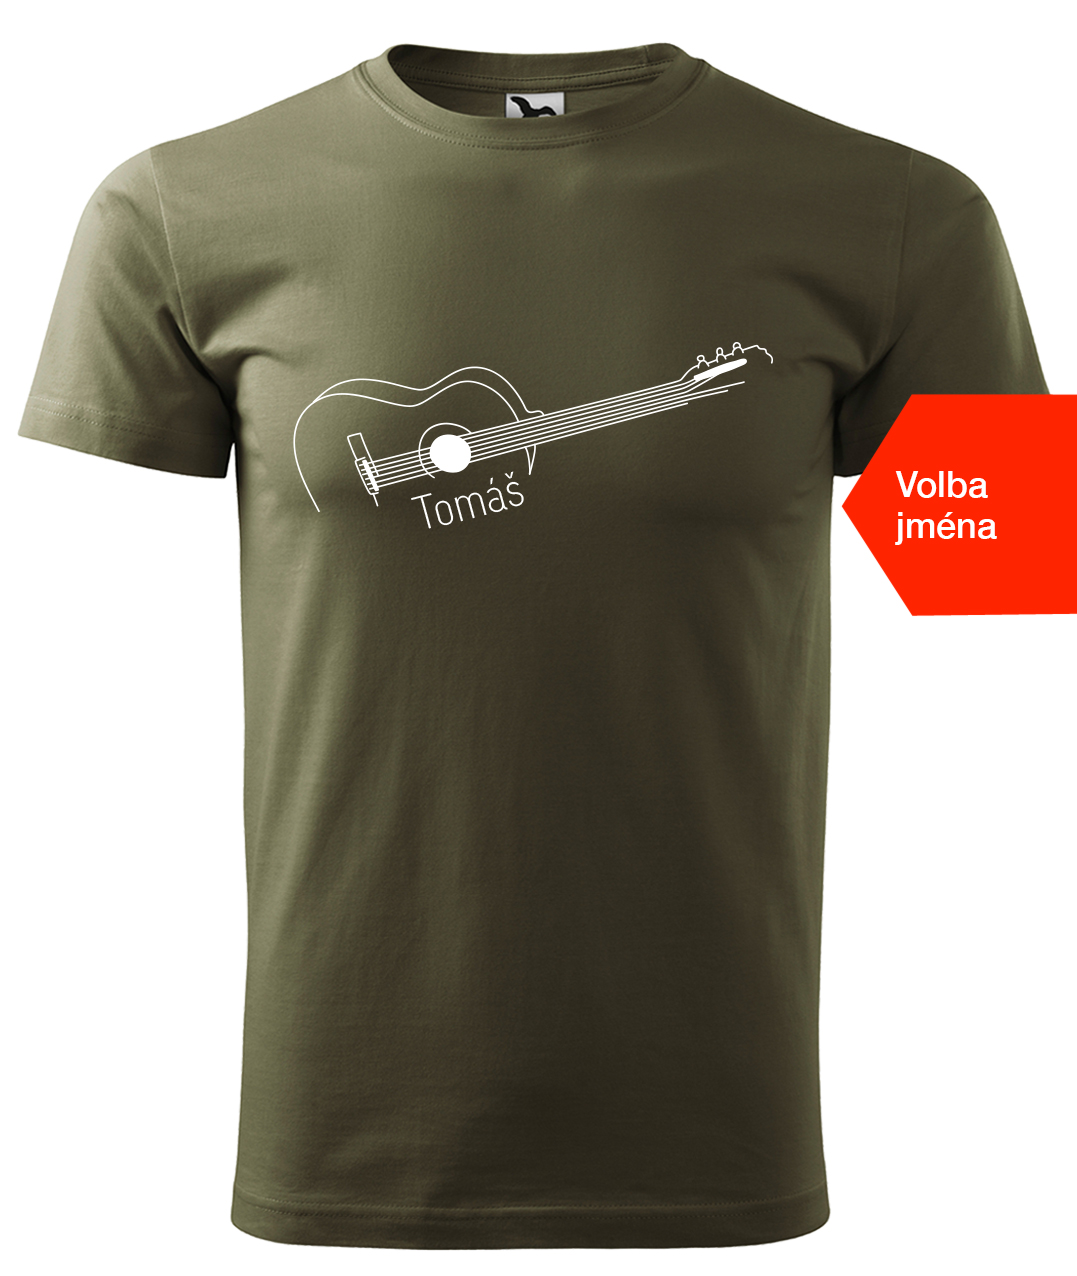 Dětské tričko s kytarou se jménem - Stylizovaná kytara Velikost: 4 roky / 110 cm, Barva: Military (69), Délka rukávu: Krátký rukáv